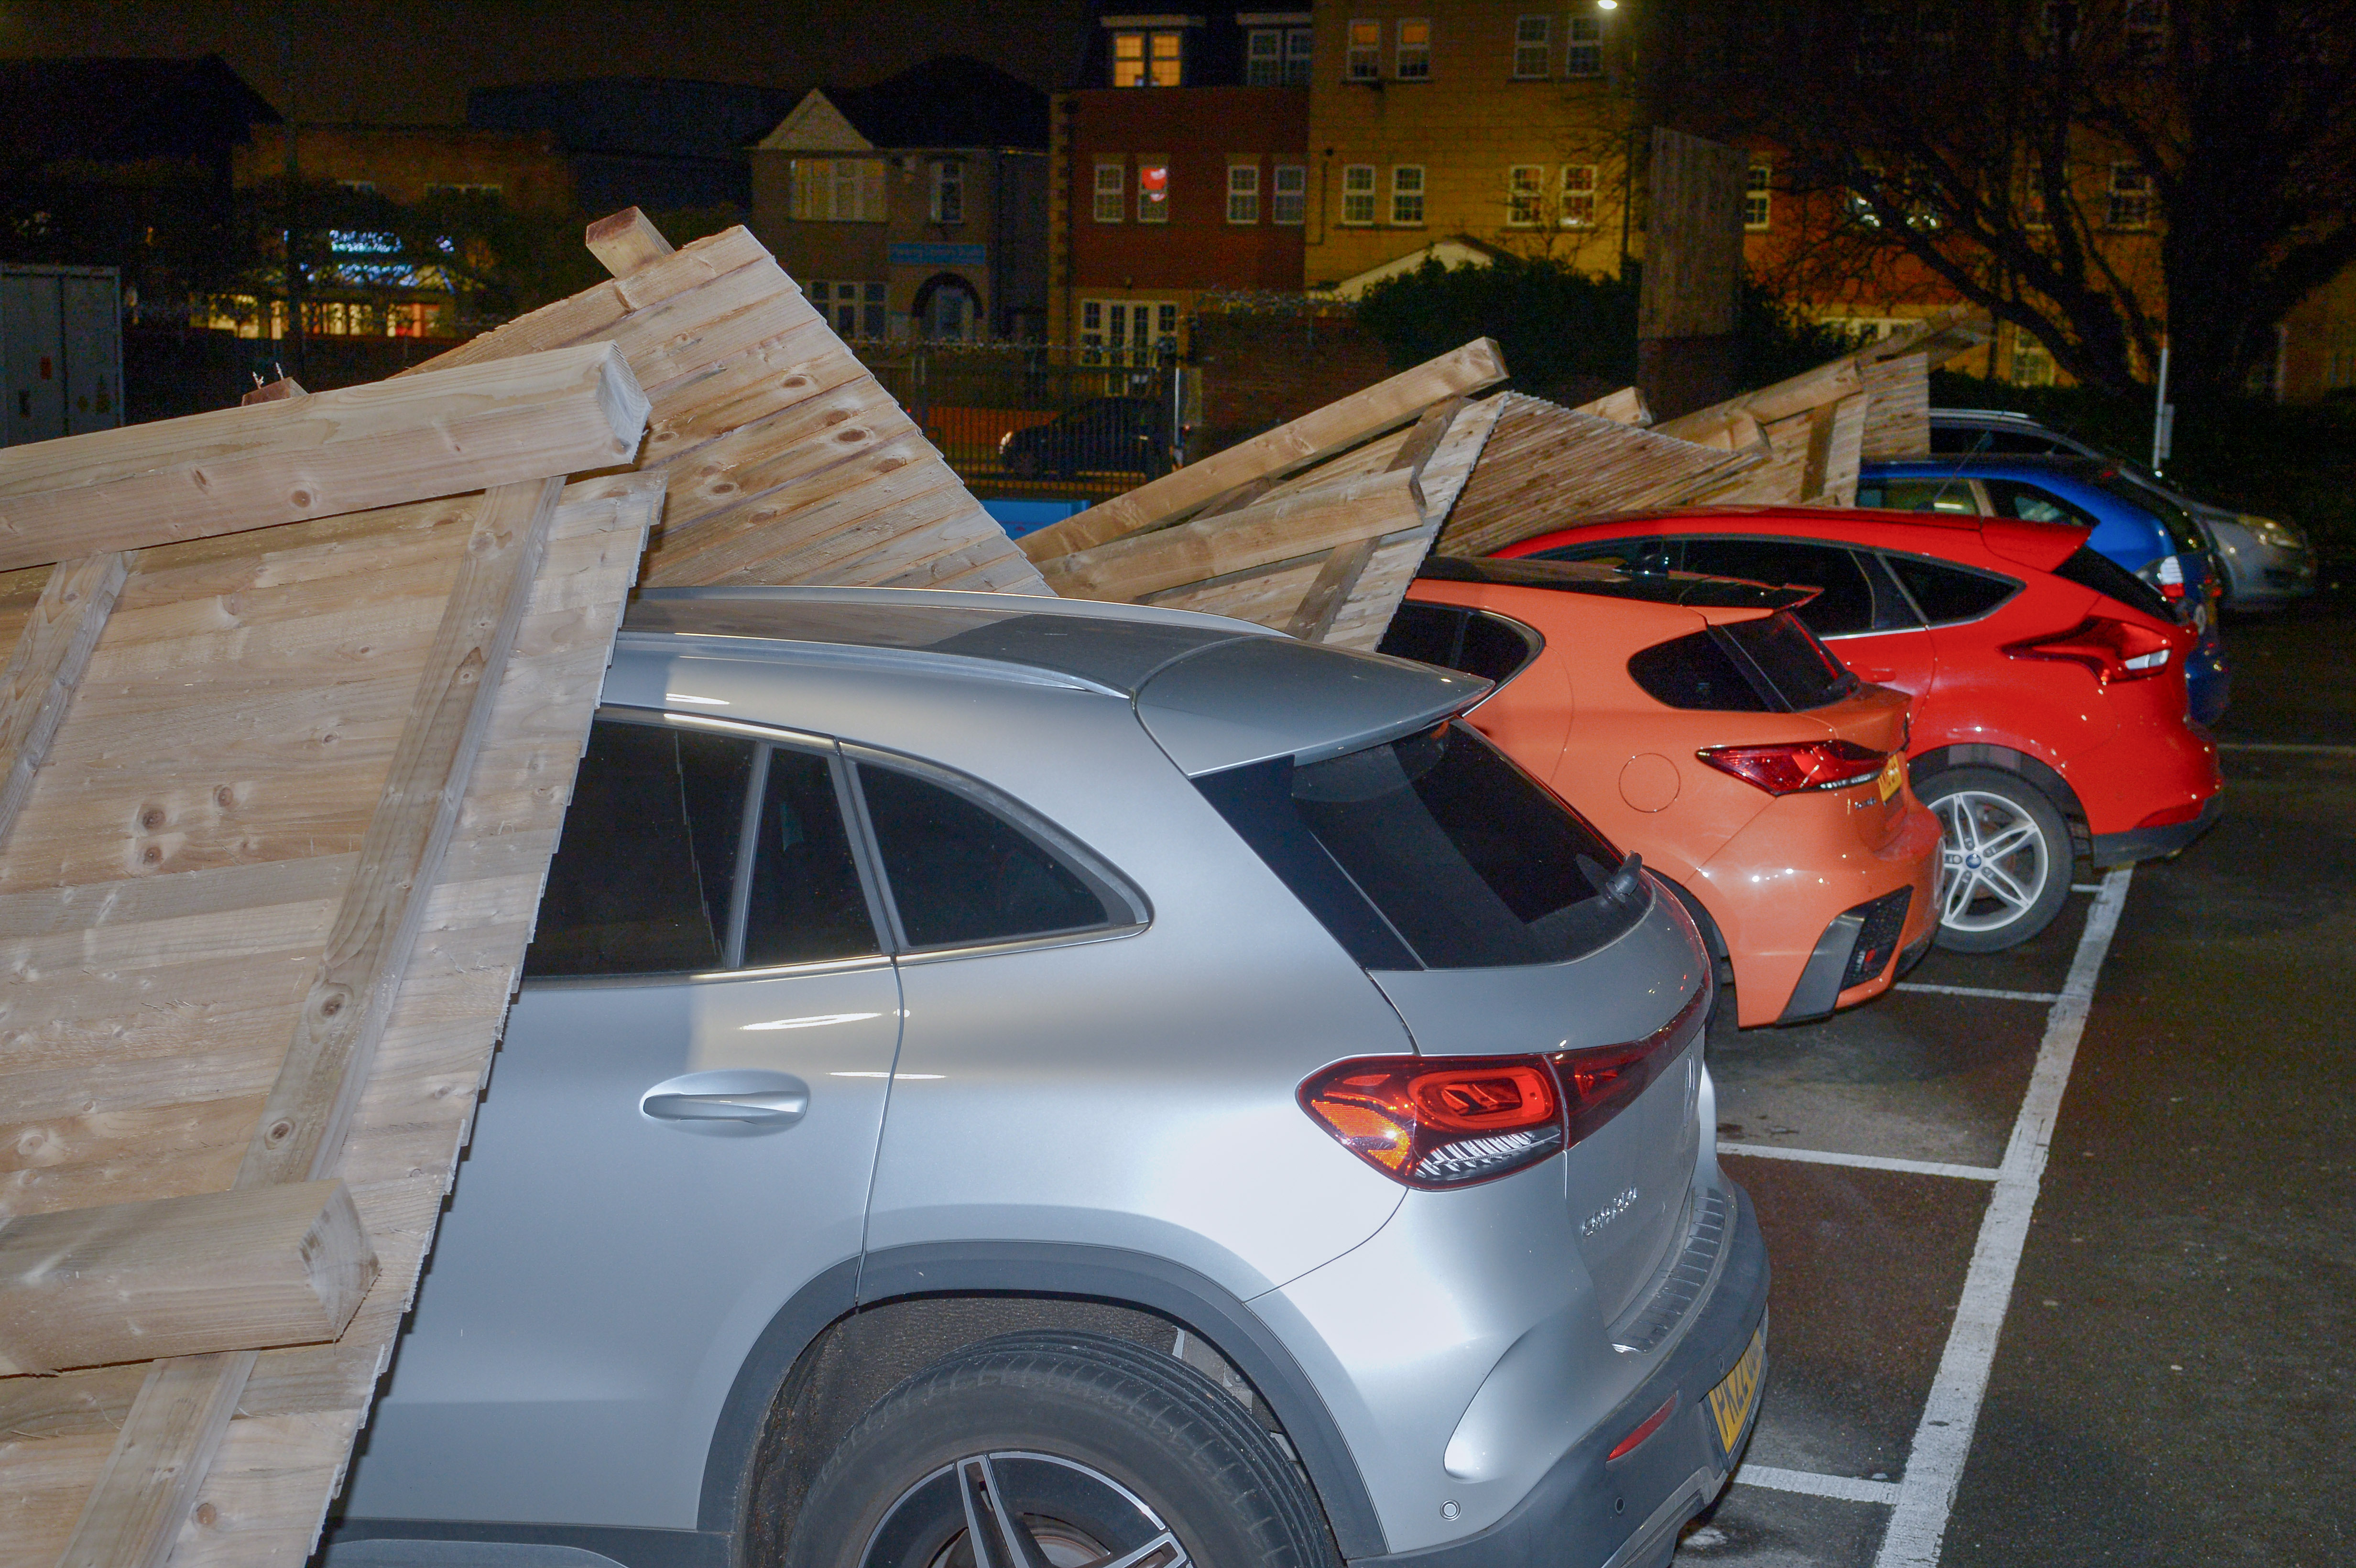 Der Sturm ließ einen Holzzaun auf einem Sainsbury's-Parkplatz in Hornchurch im Osten Londons einstürzen